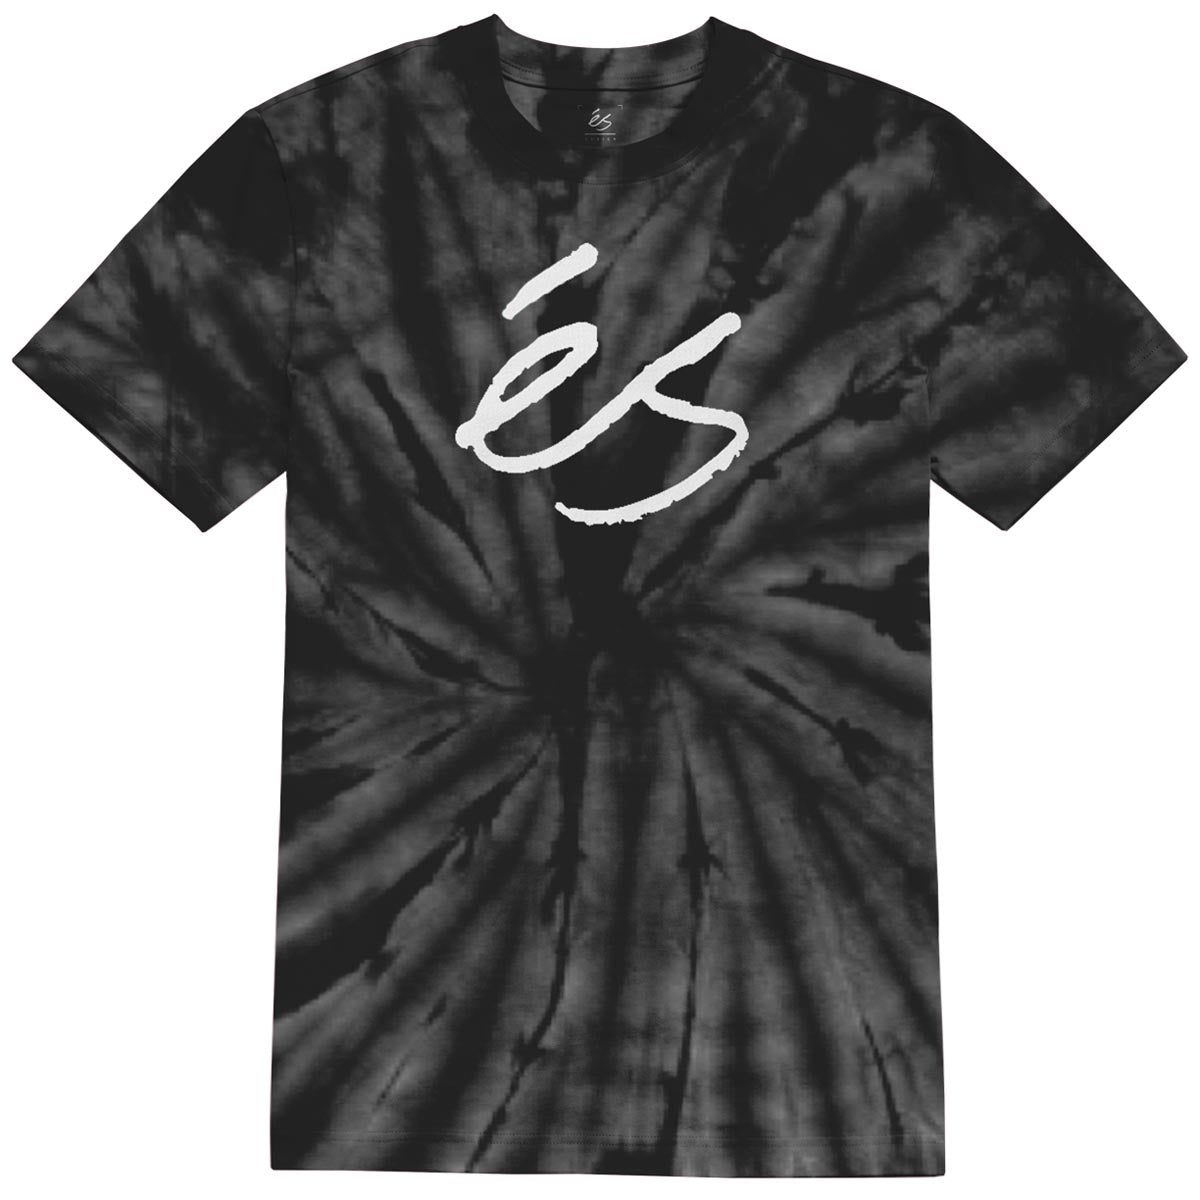 eS Script Tye Dye T-Shirt - Black image 1